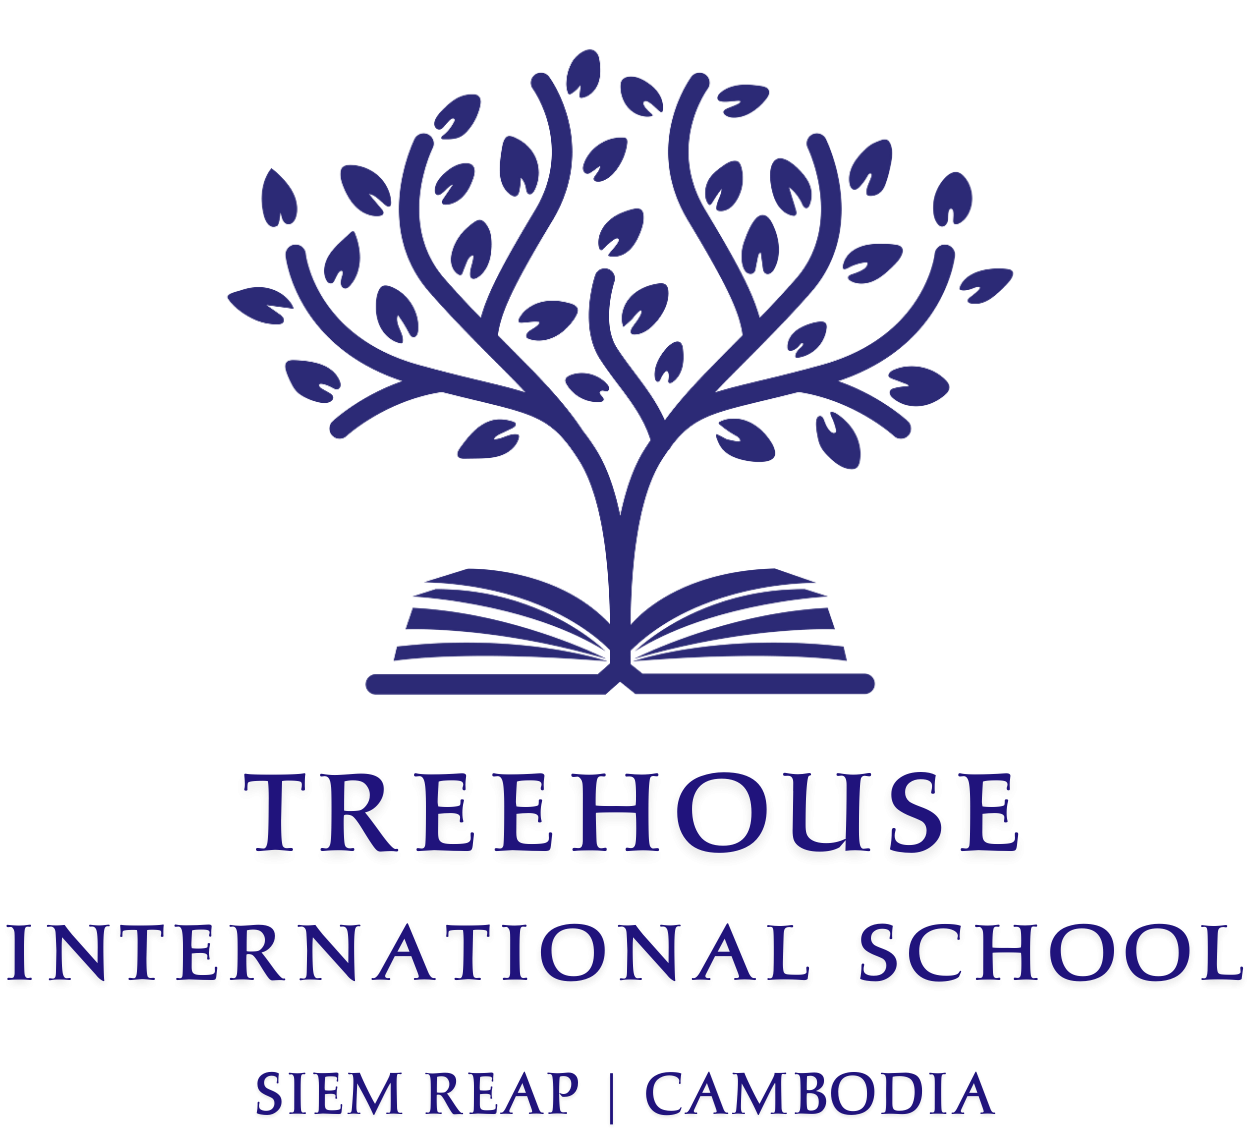 Treehouse International School - Siem Reap